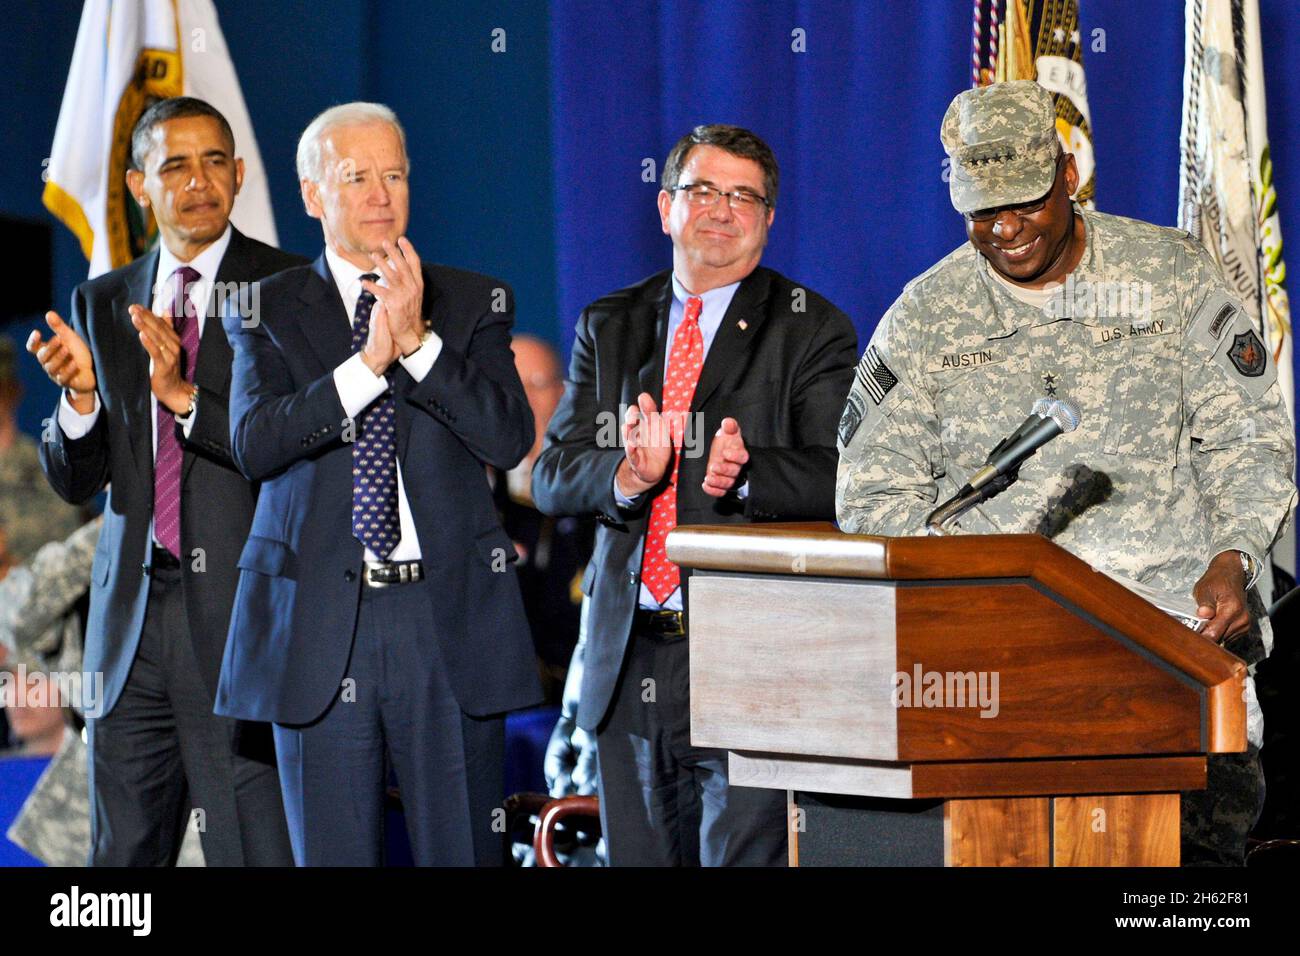 De gauche à droite, le président Barack Obama, le vice-président Joe Biden et le secrétaire adjoint à la Défense Ashton B. carter applaudissent au poste de président des chefs d'état-major interarmées, le général Martin E. Dempsey, d'extrême droite,Remet le podium au général Lloyd James Austin III, qui accueille les militaires d'Irak à la joint base Andrews (Hangar 3) le mardi 20 décembre 2011. Banque D'Images